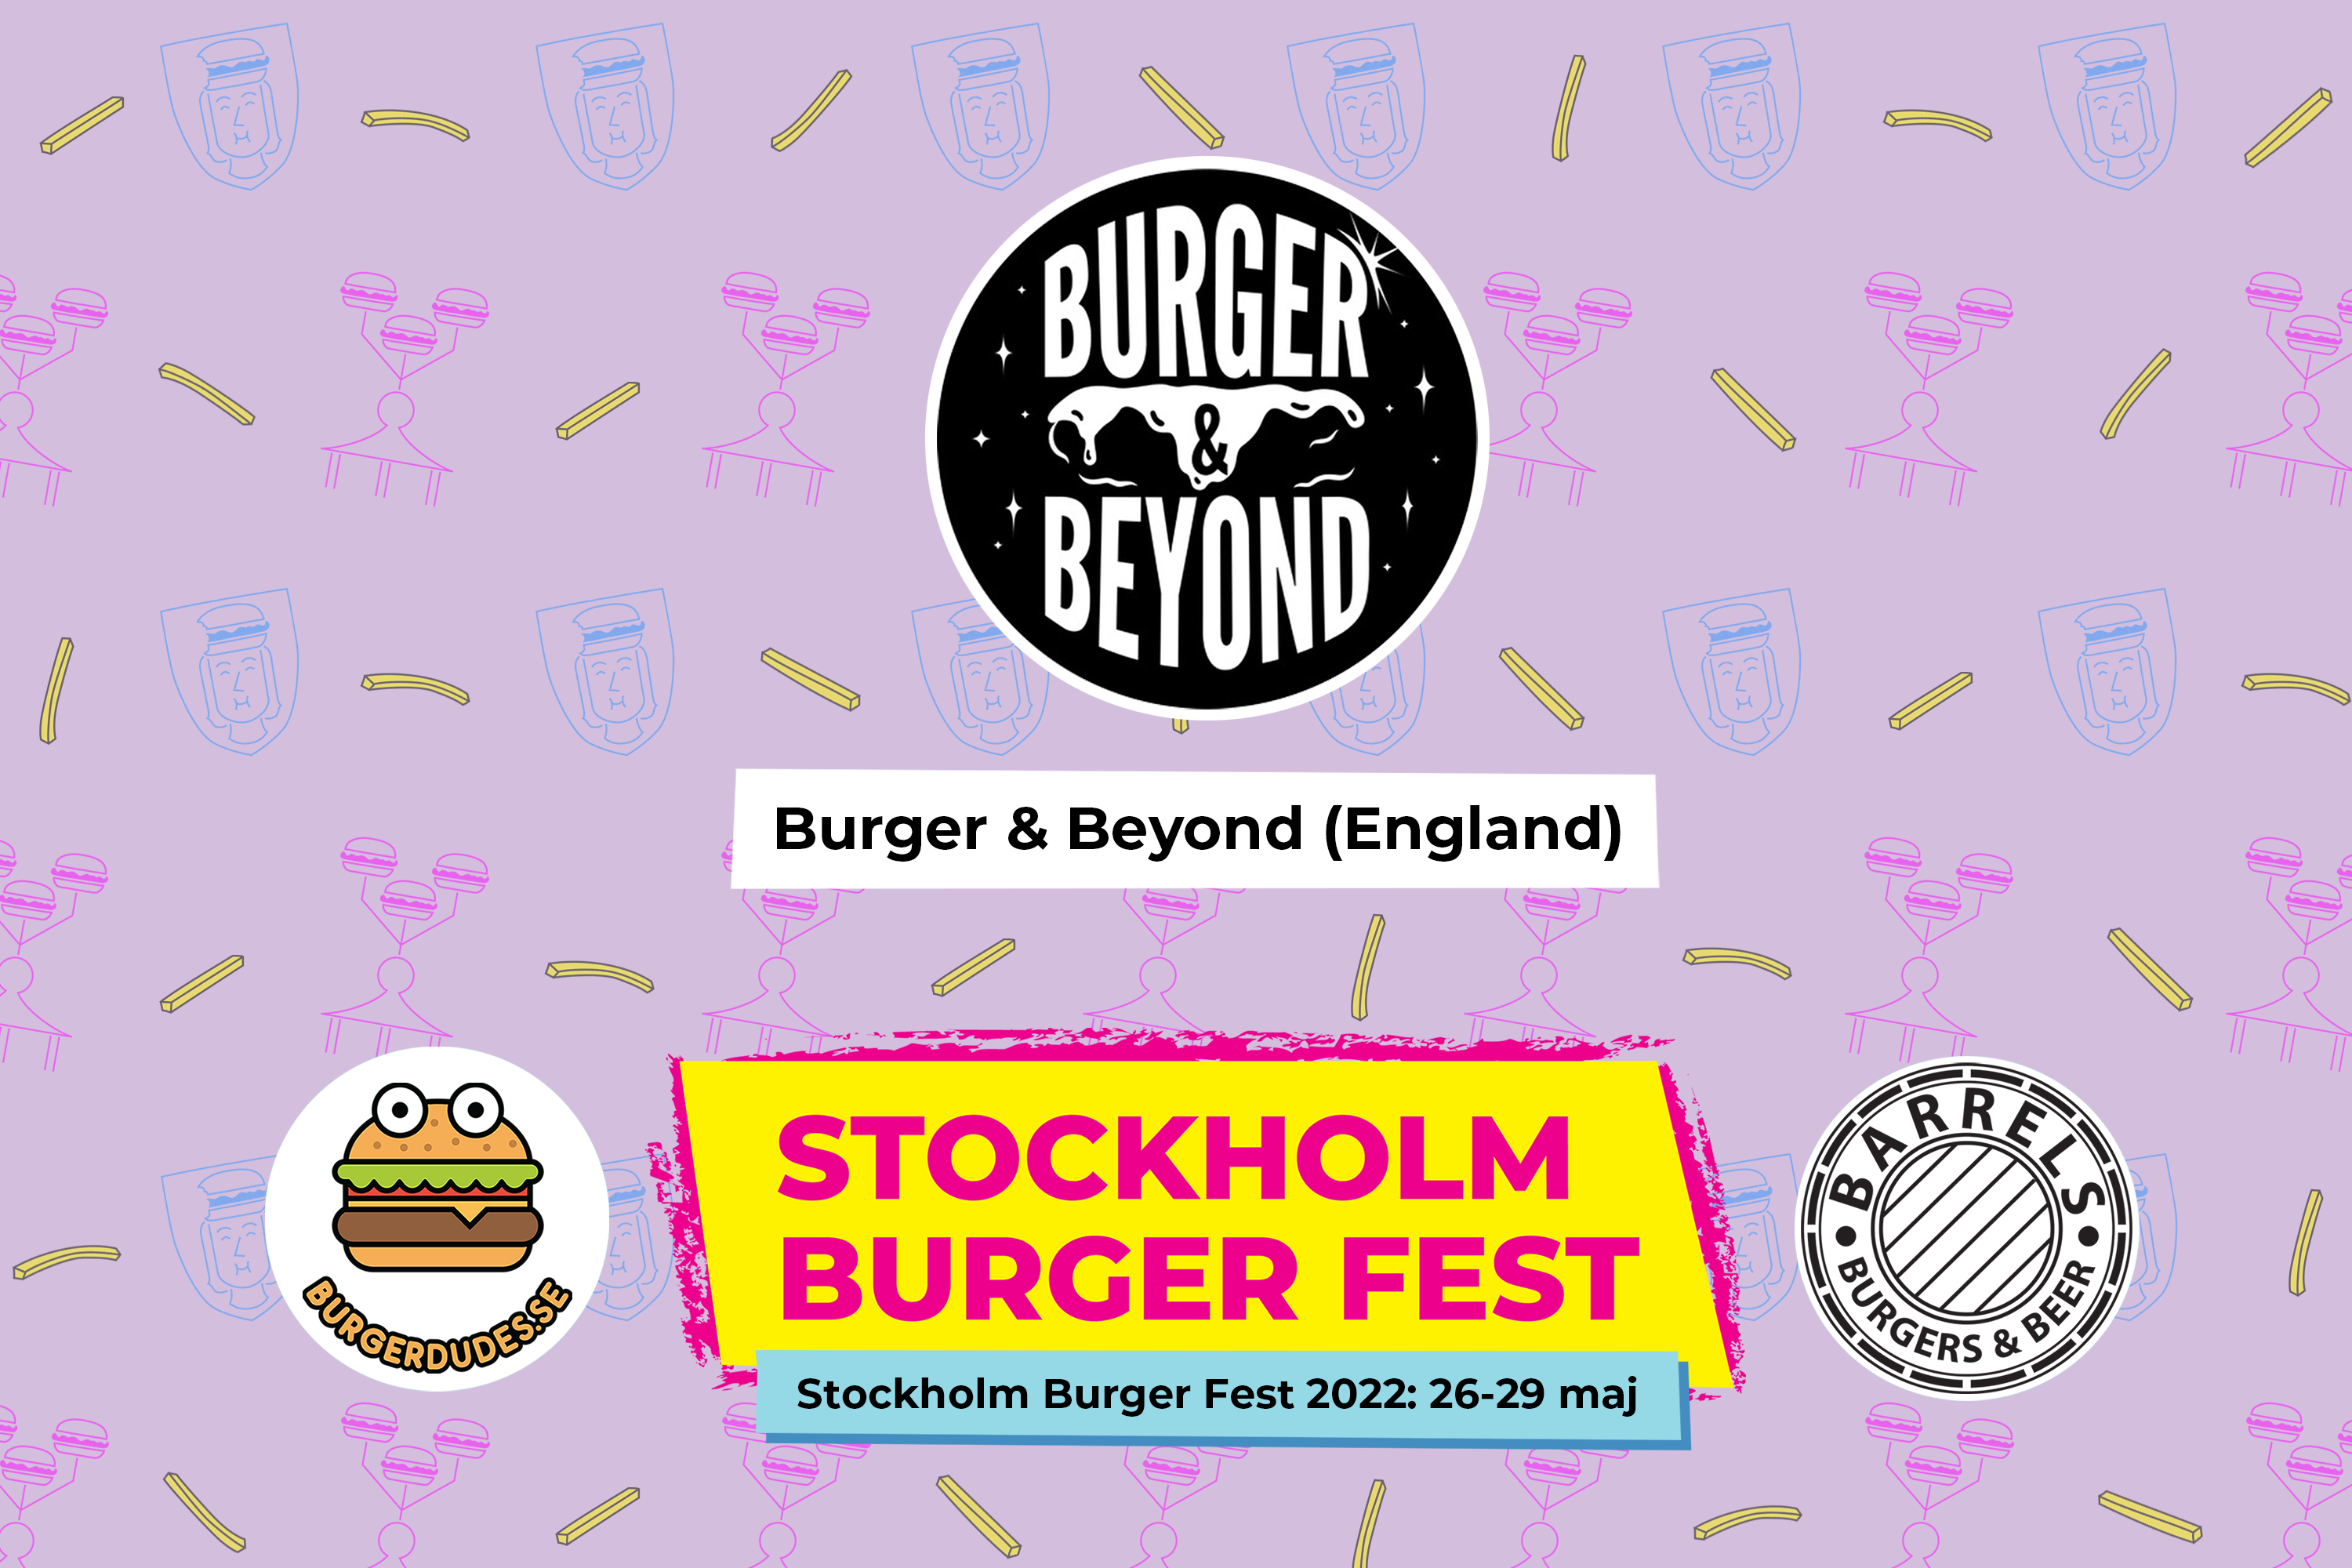 Stockholm Burger Fest 2022: Burger & Beyond